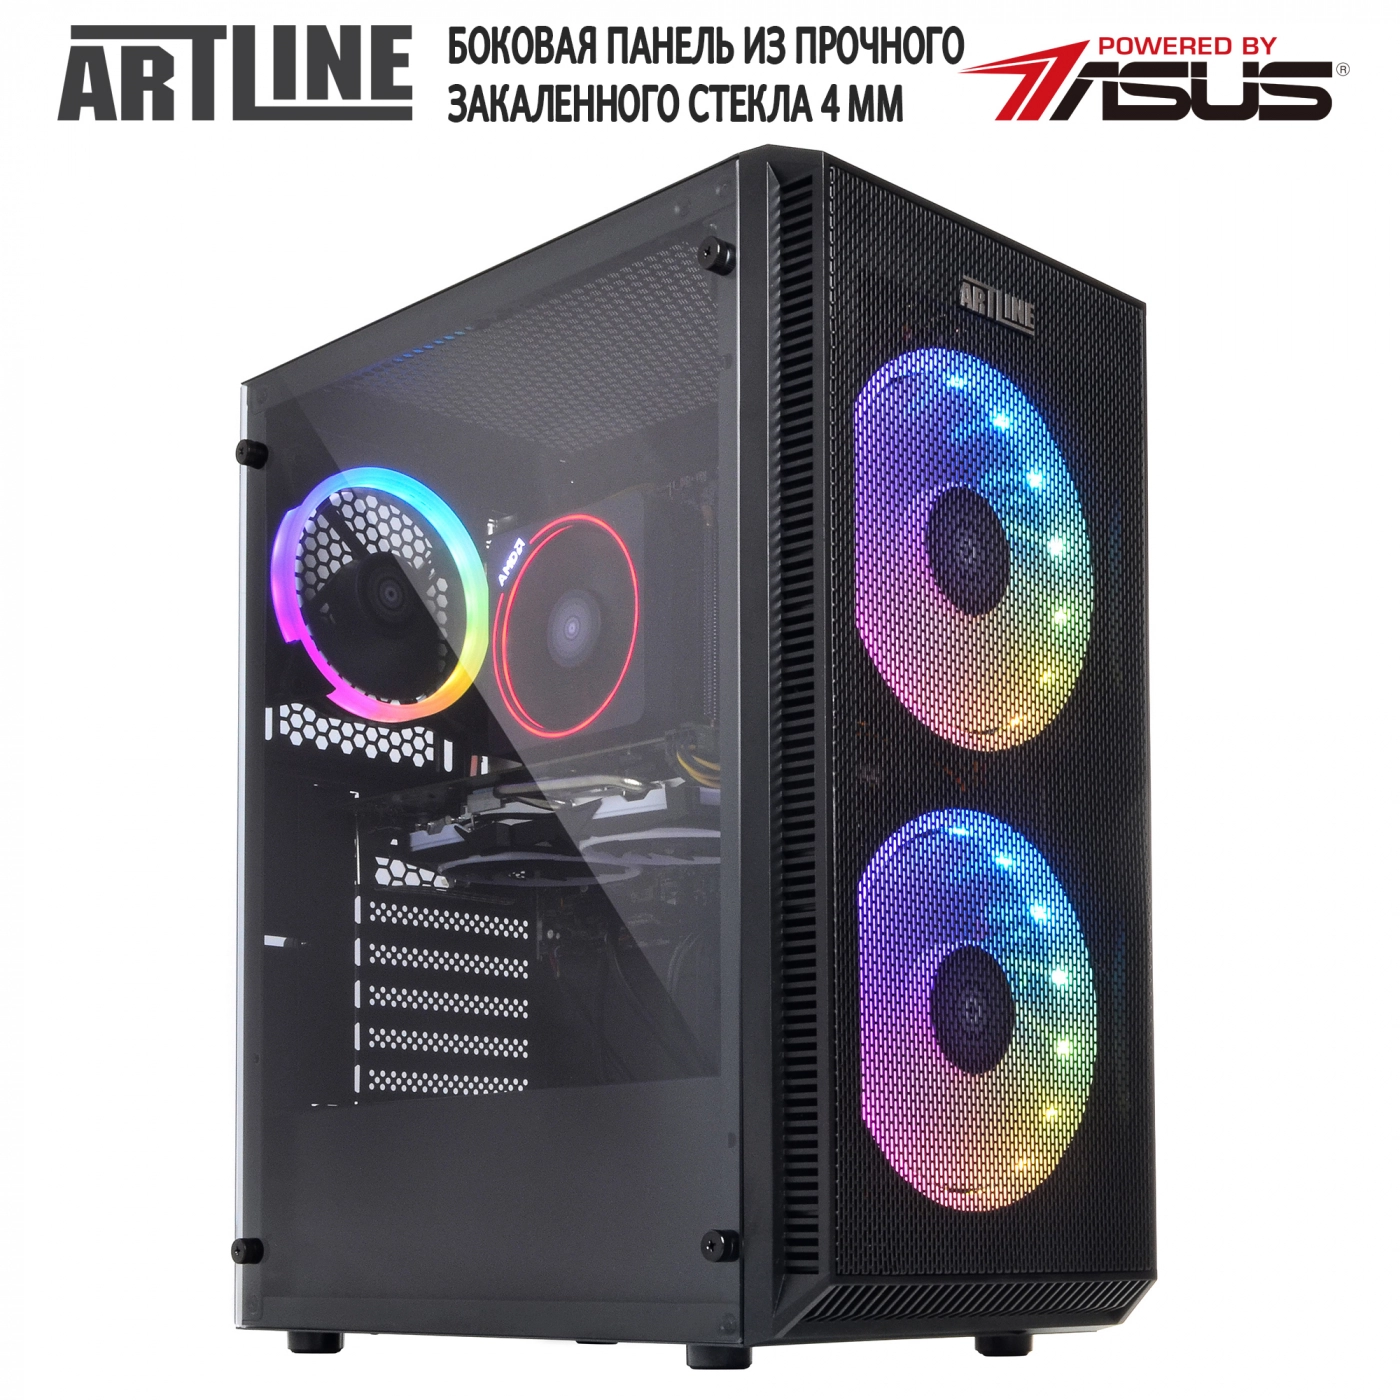 Купить Компьютер ARTLINE Gaming X61v08 - фото 8